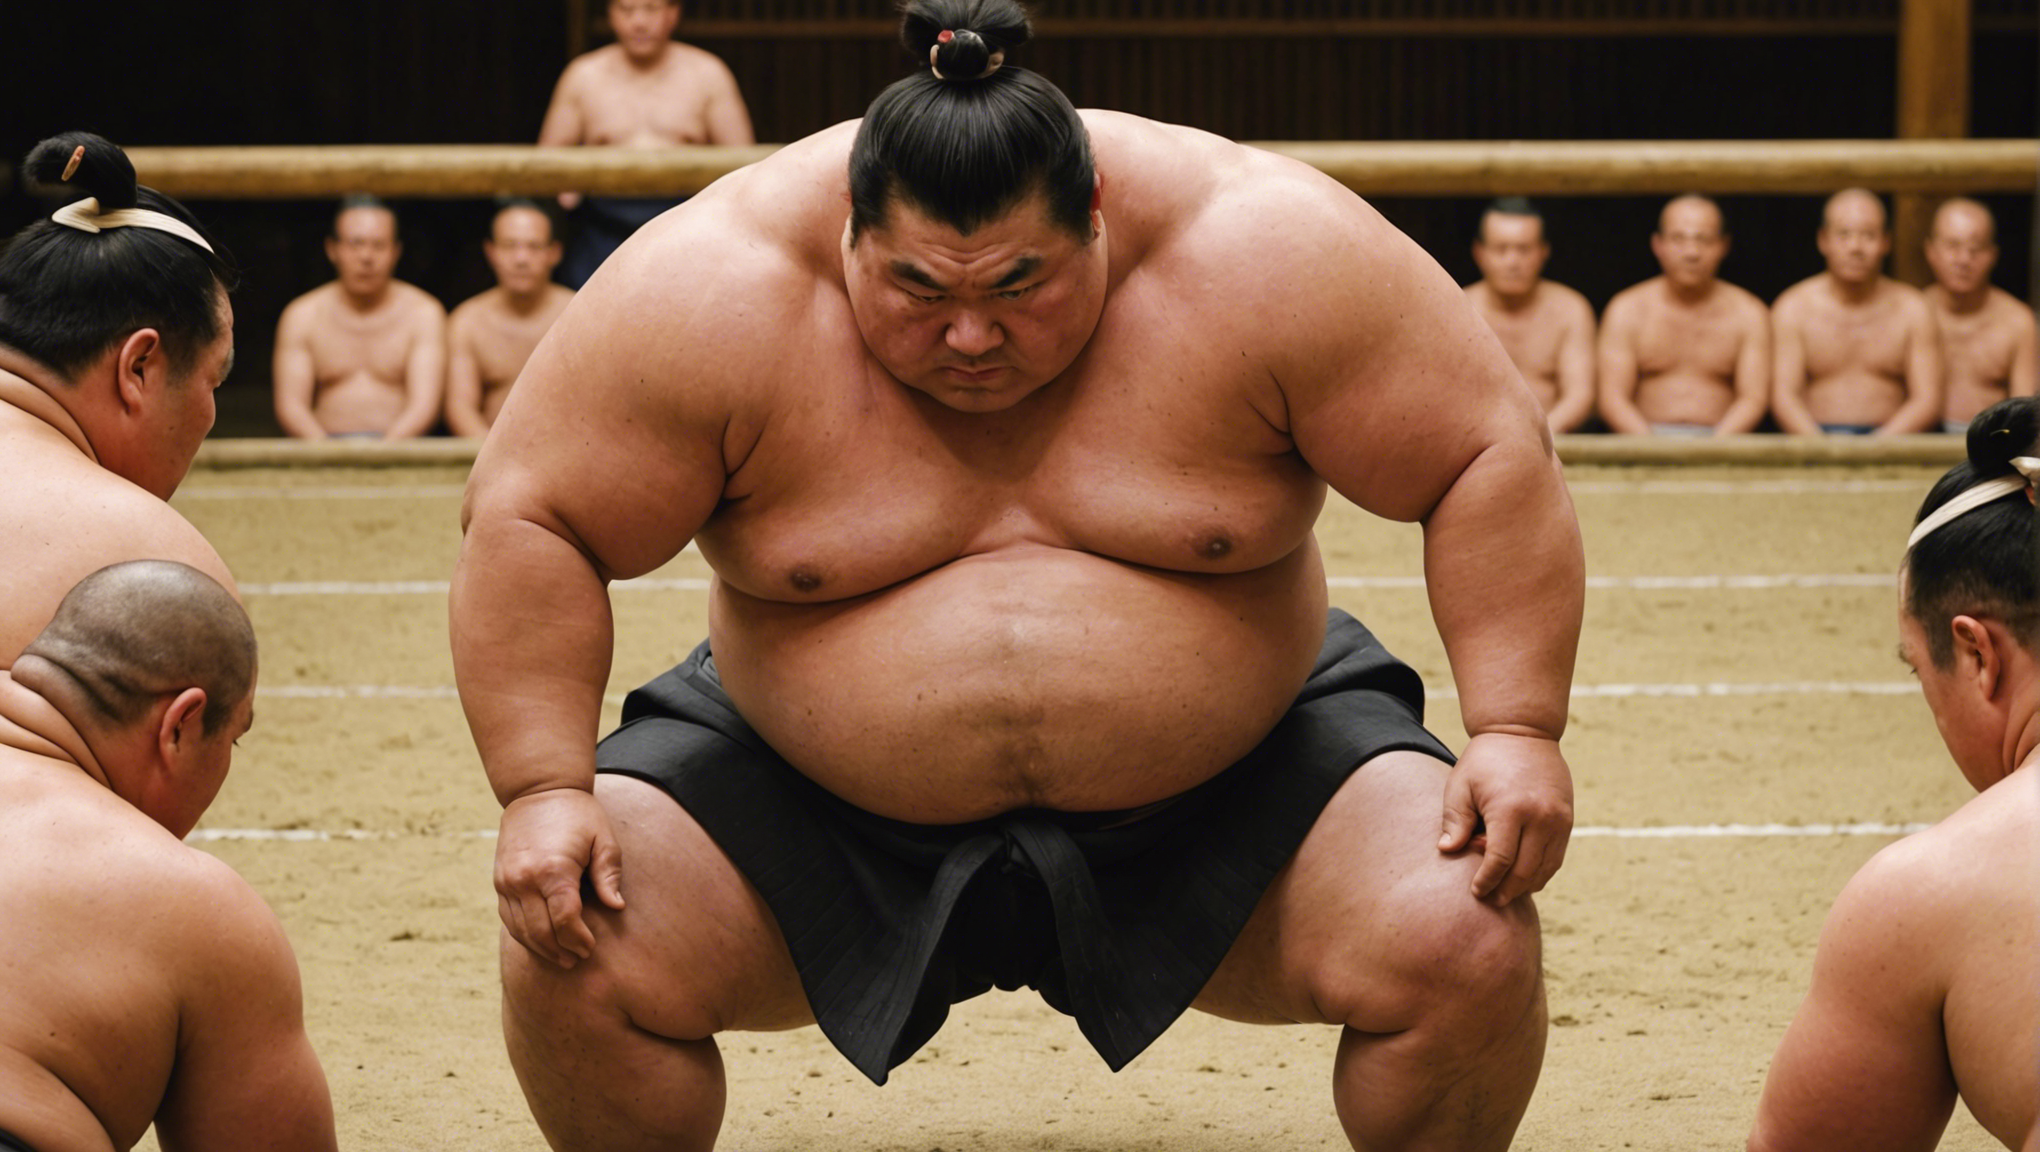 découvrez le régime alimentaire des sumo, un aspect fascinant de leur entraînement et de leur style de vie unique.